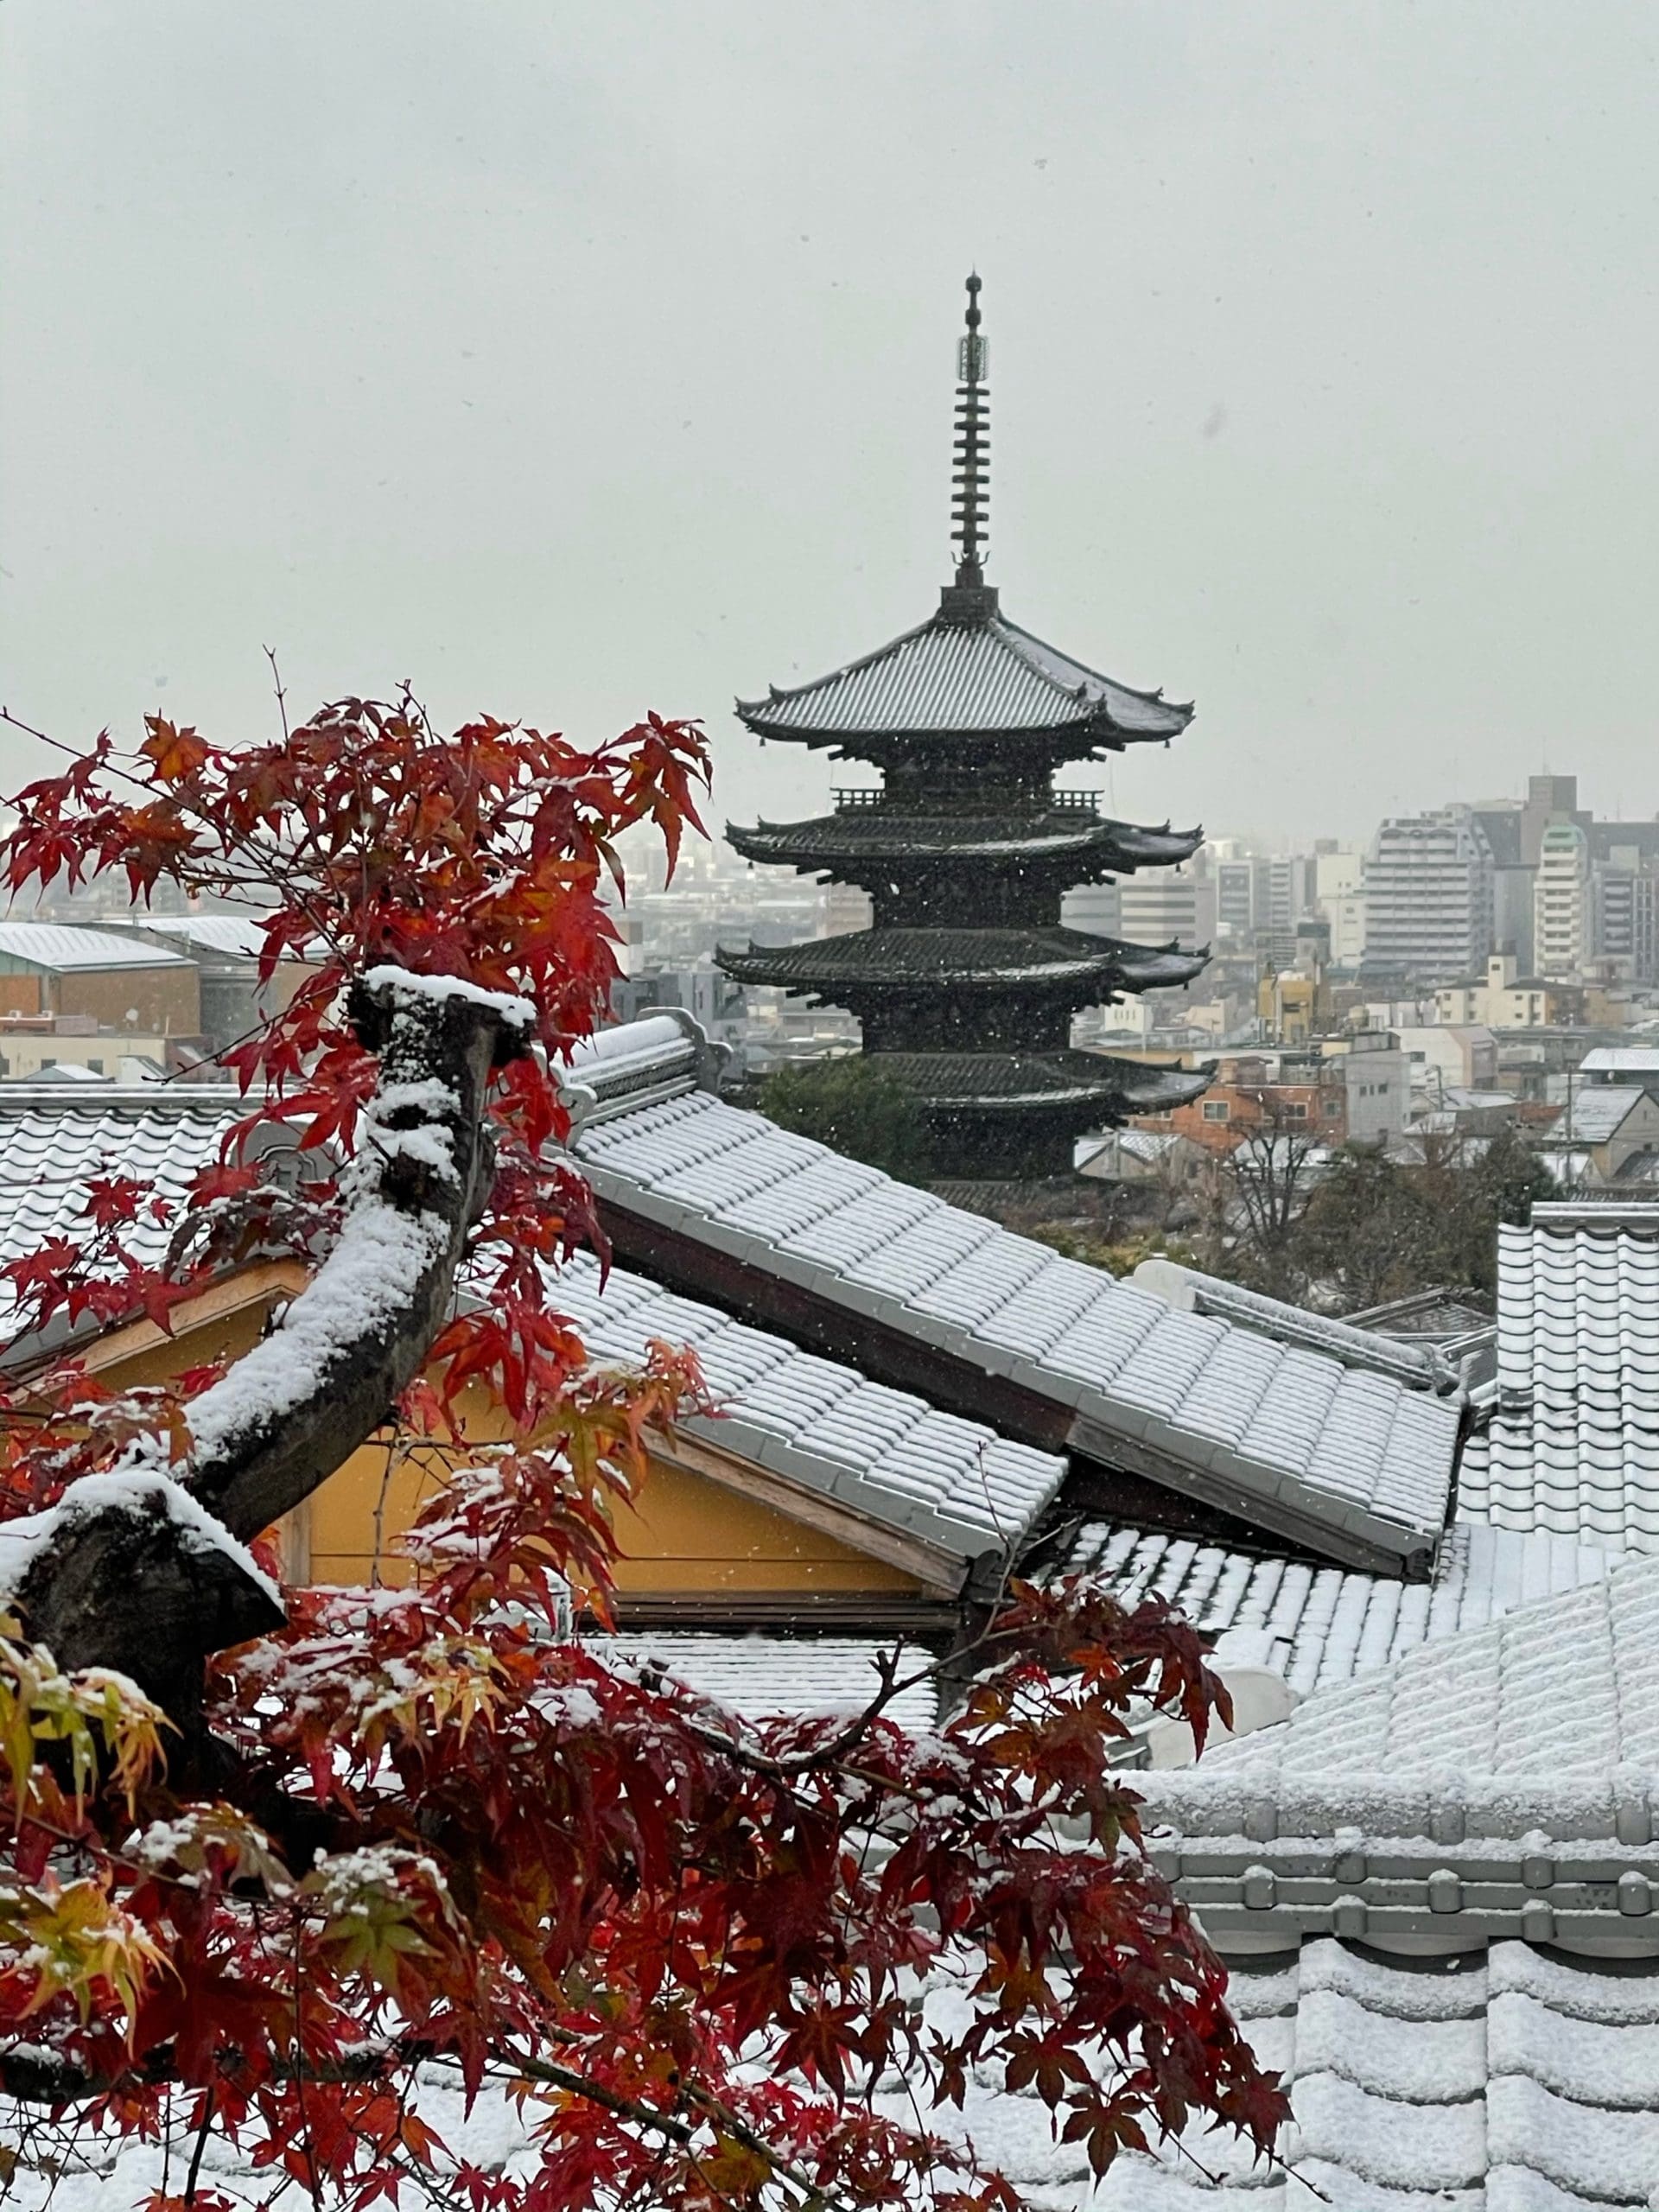 雪が積もった京の町並みと八坂の塔